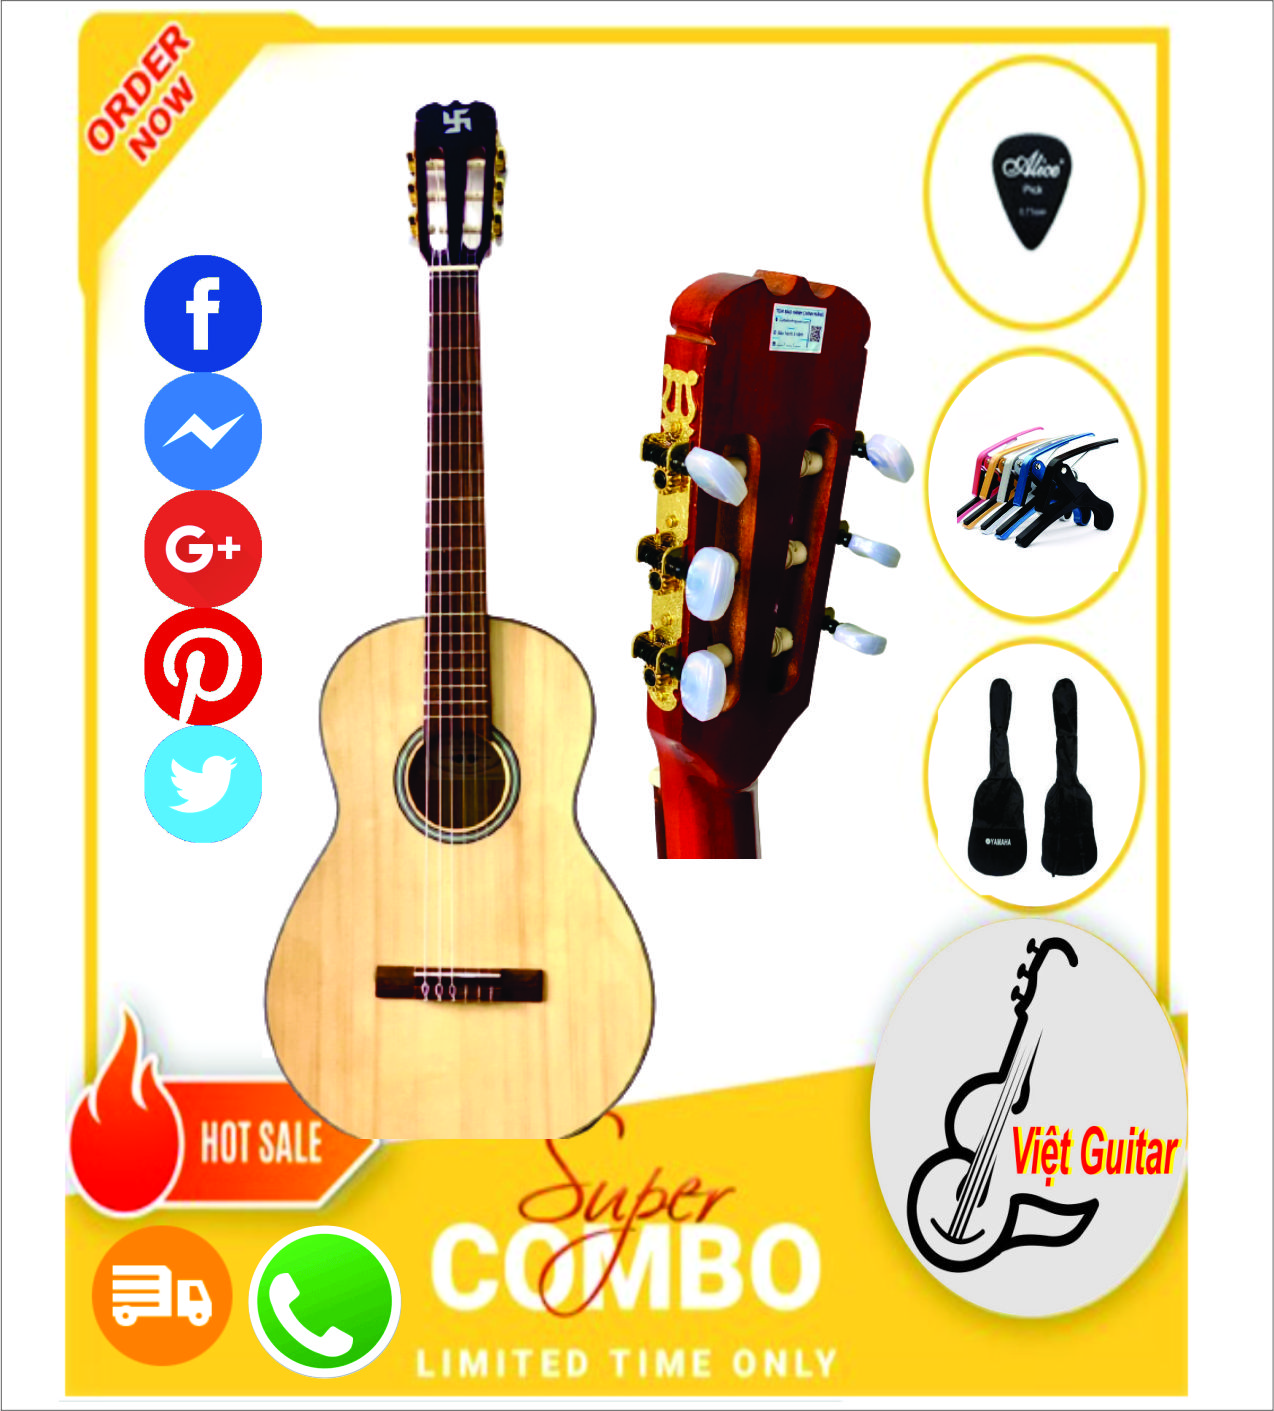 Guitar Bình Nguyên M70 - Guitar Classic Mini 3/4 Bán Chạy Nhất Tầm 1tr5 - Dễ Bấm, Tiếng Hay, Phụ Kiện Bao Da Đầy Đủ